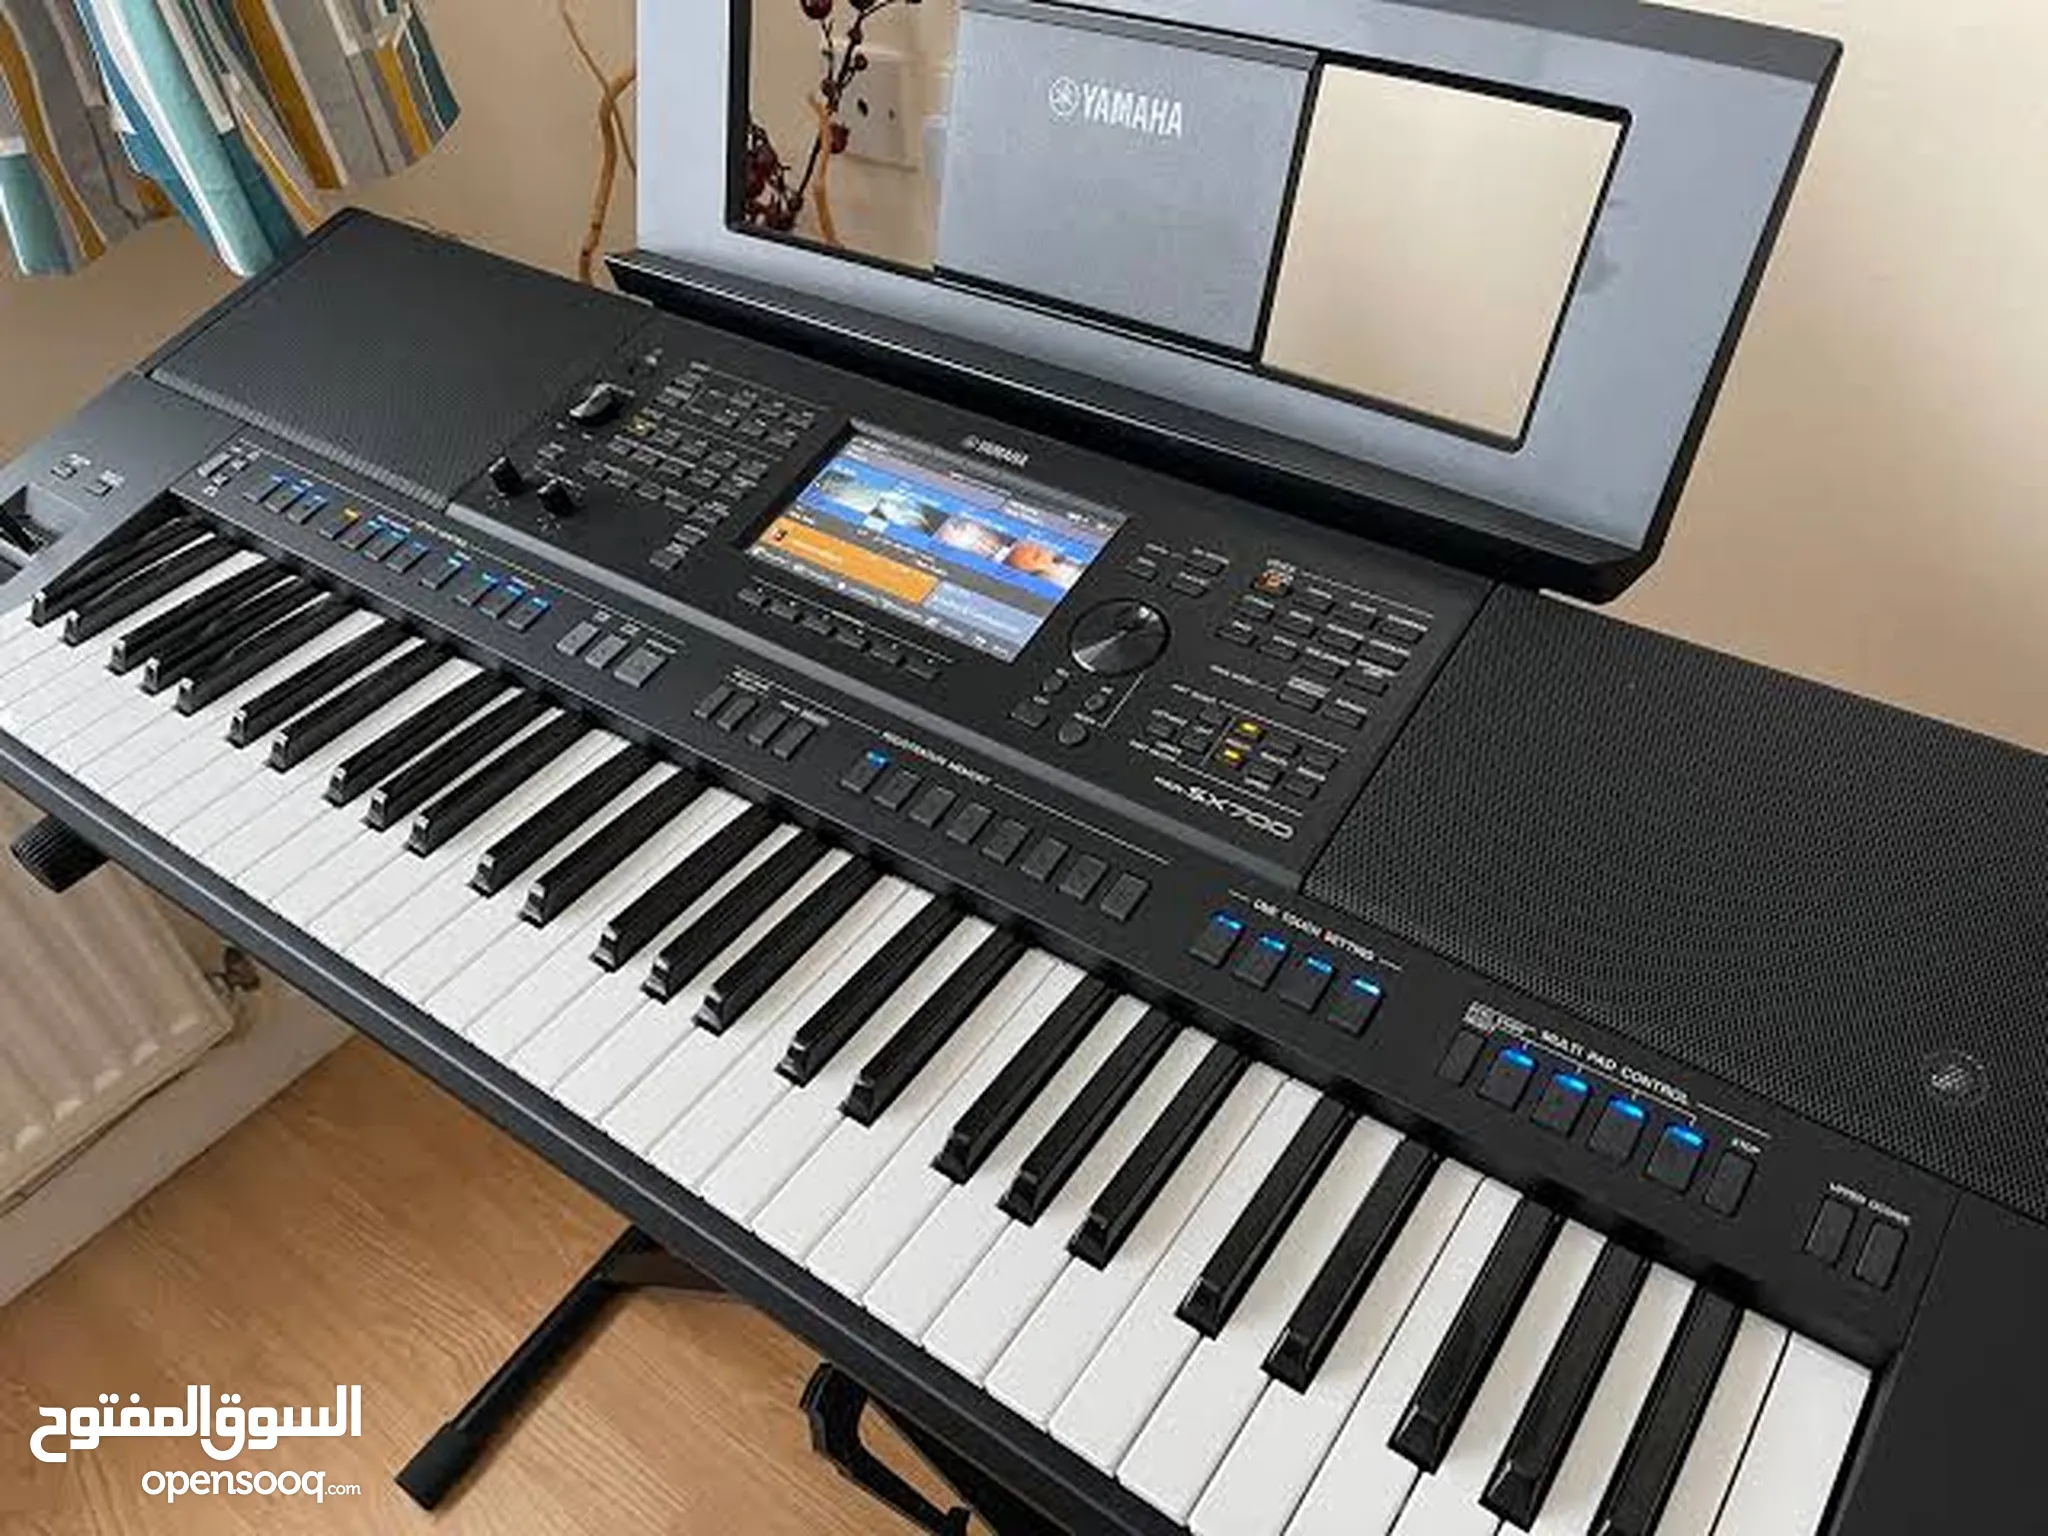 بيانو و اورج للبيع : الات موسيقية : افضل الاسعار في مصر | السوق المفتوح